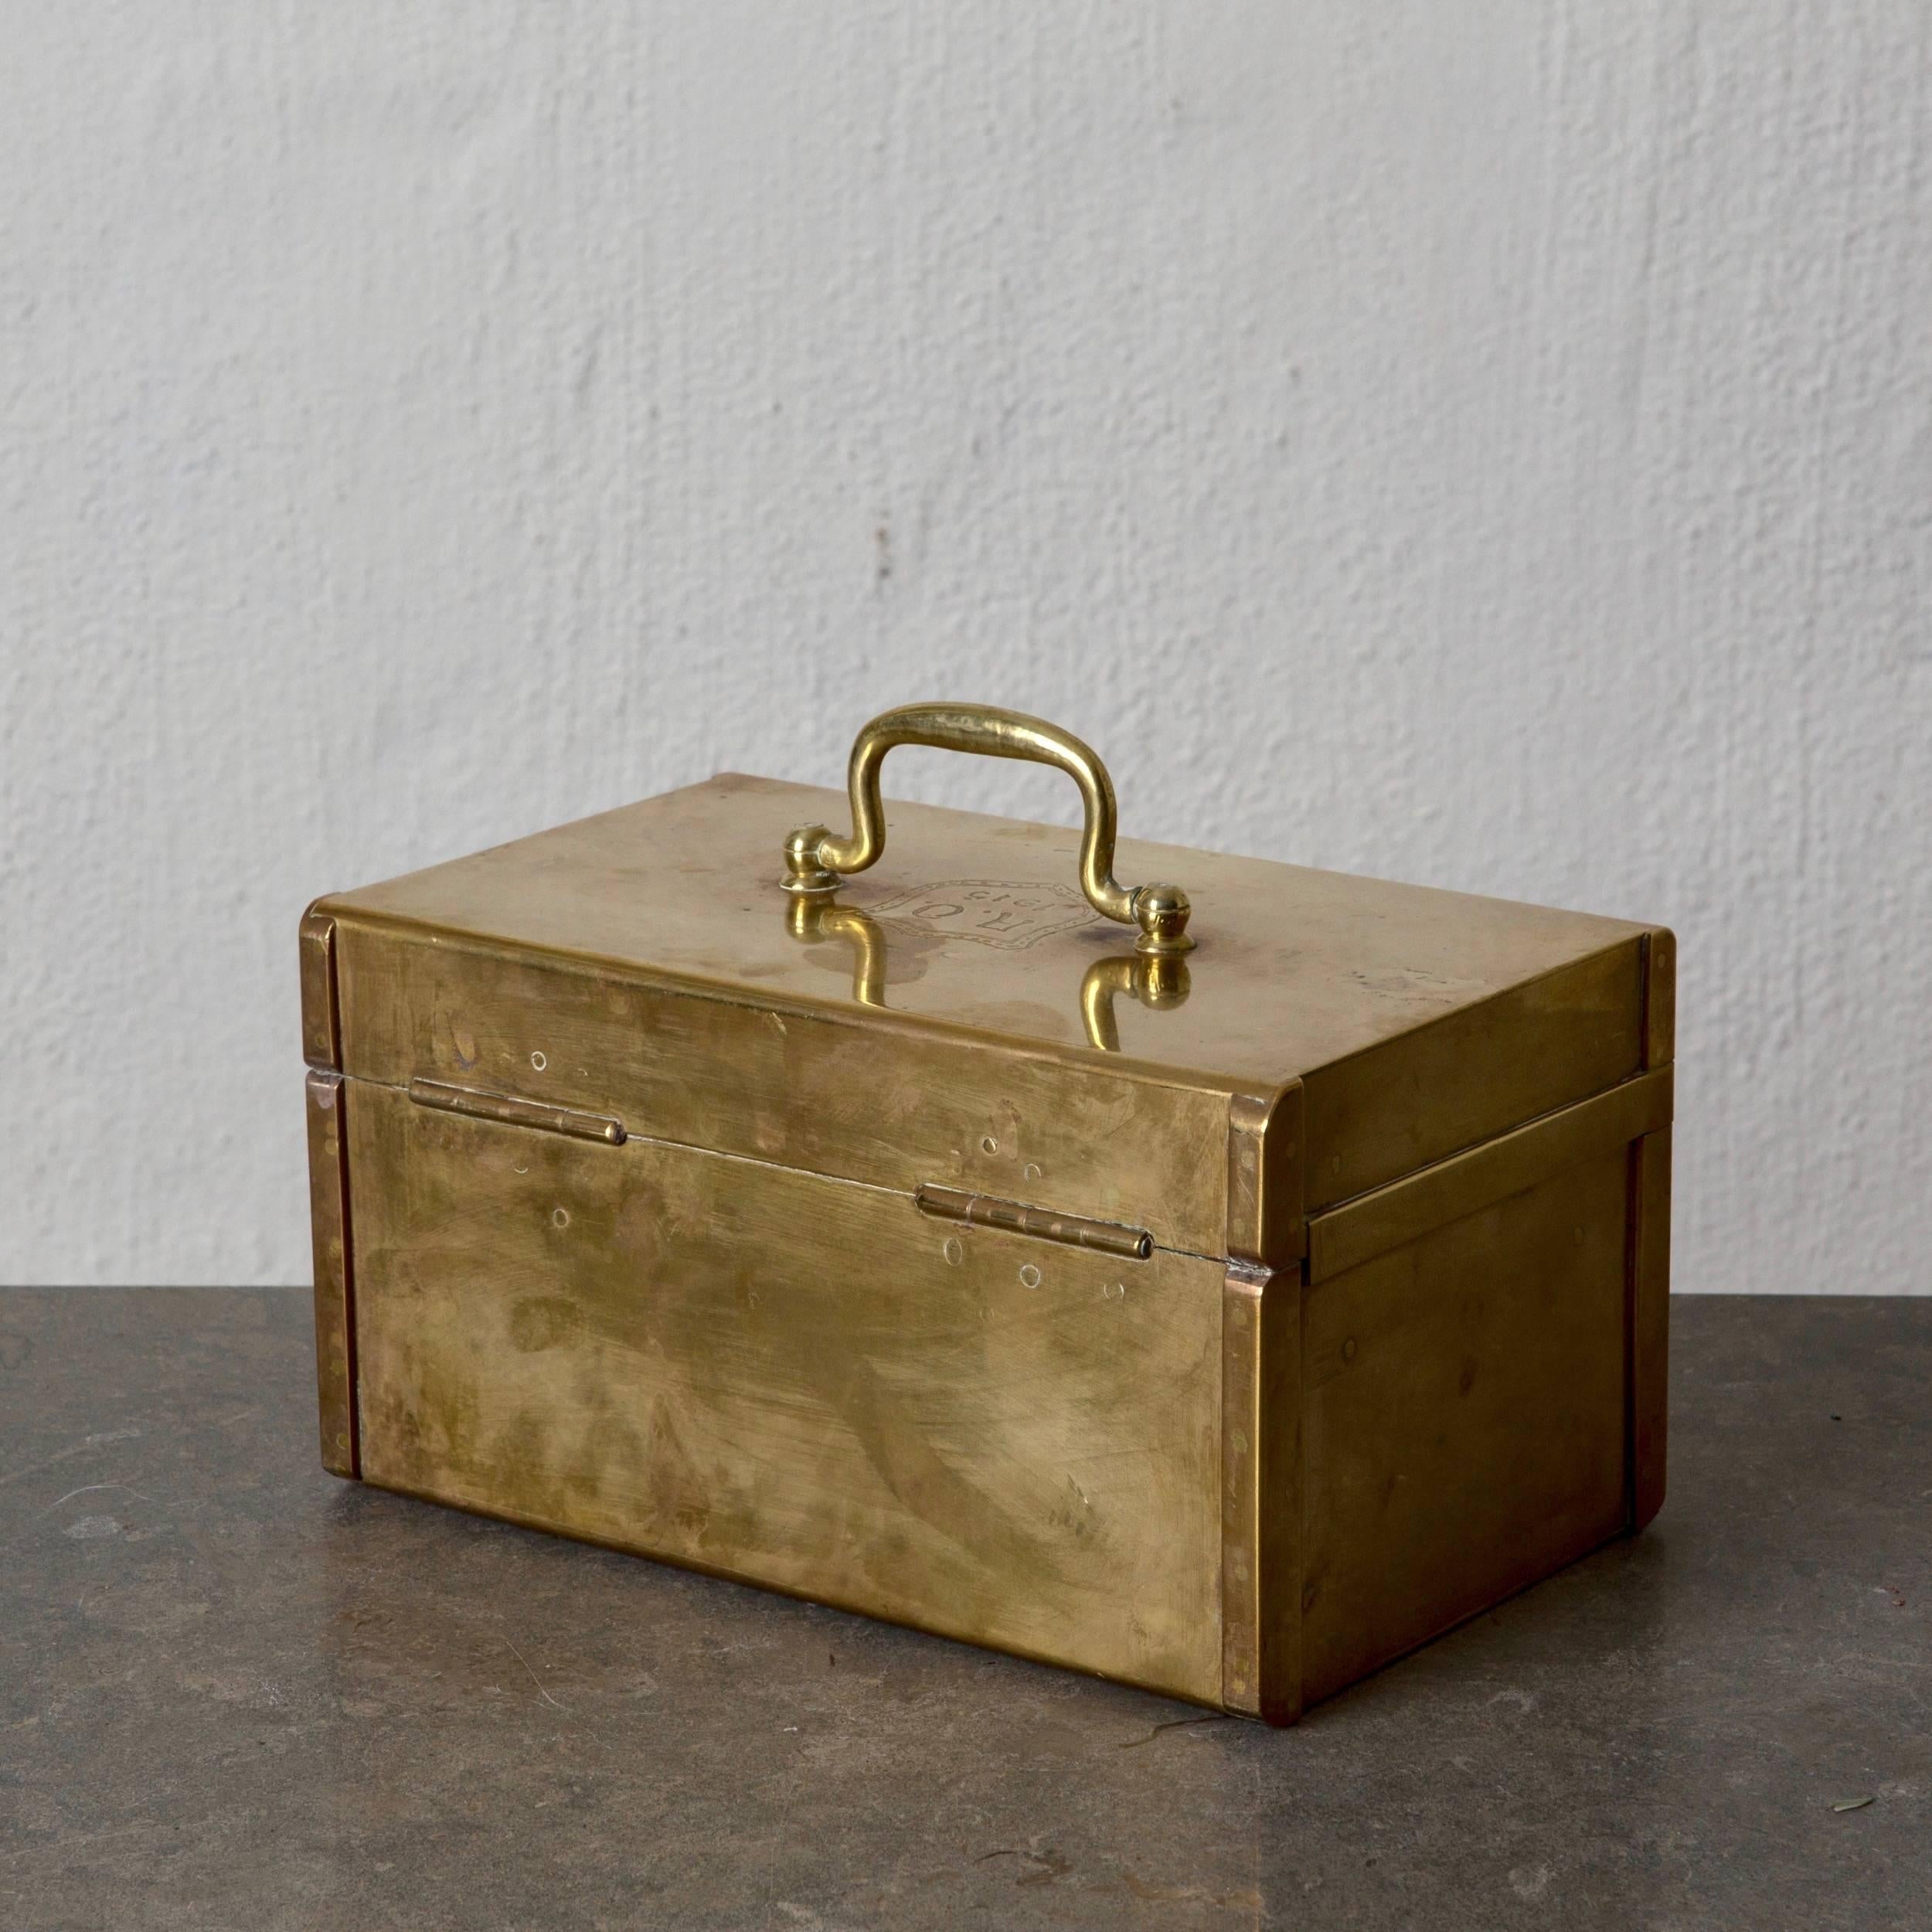 Box dekorative Messing Schwedisch, 20. Jahrhundert, Schweden. Eine Schachtel, die im 20. Jahrhundert in Schweden hergestellt wurde. Innenausstattung mit Holz. Kein Schlüssel.